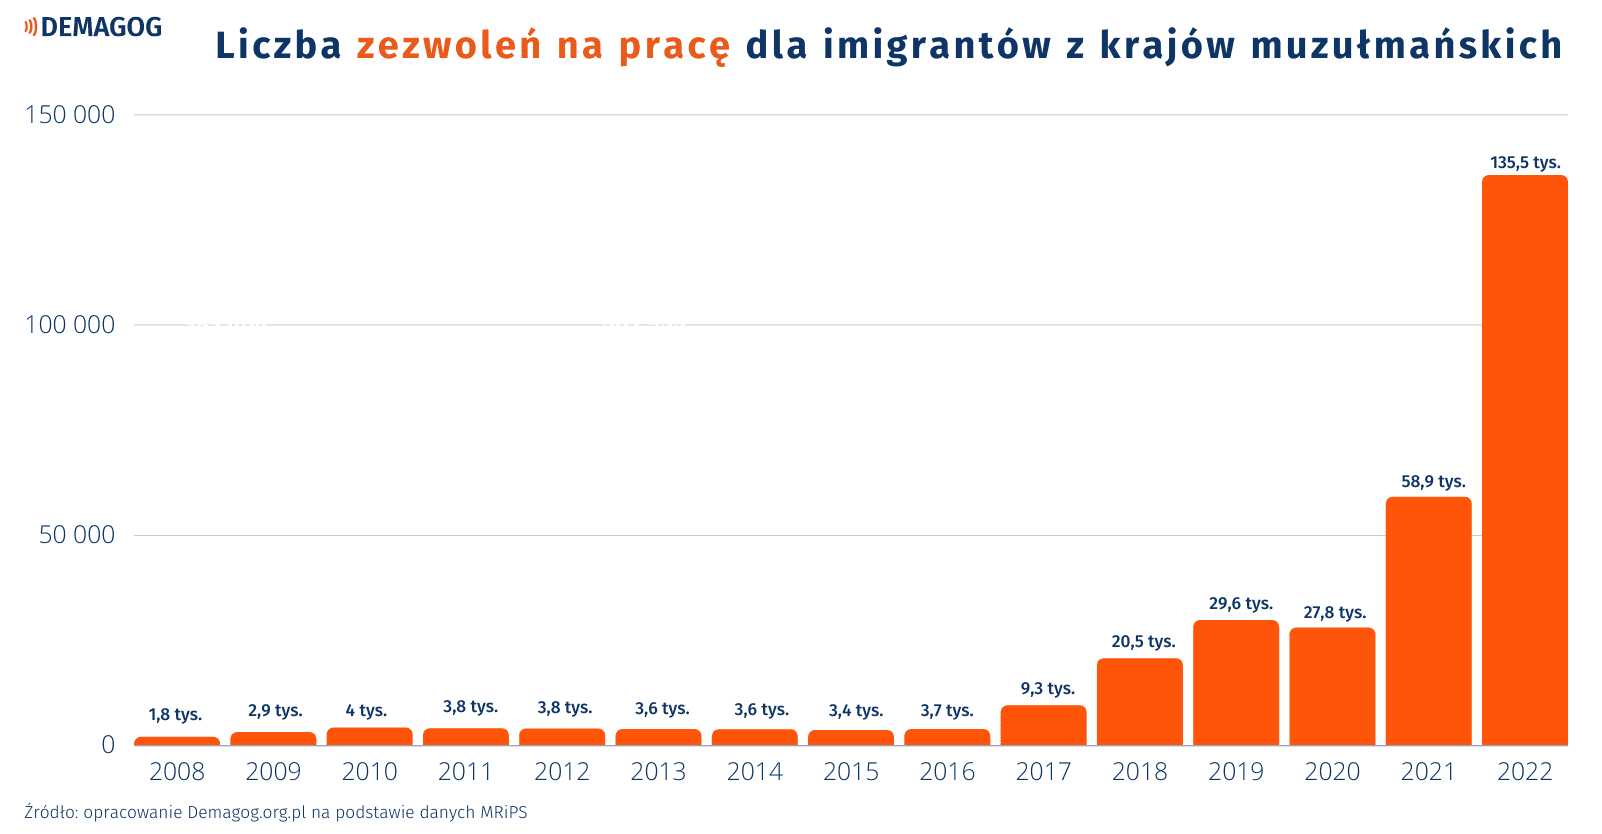 wykres słupkowy przedstawiający liczbę pozwoleń na prace dla imigrantów z krajów muzułmańskich